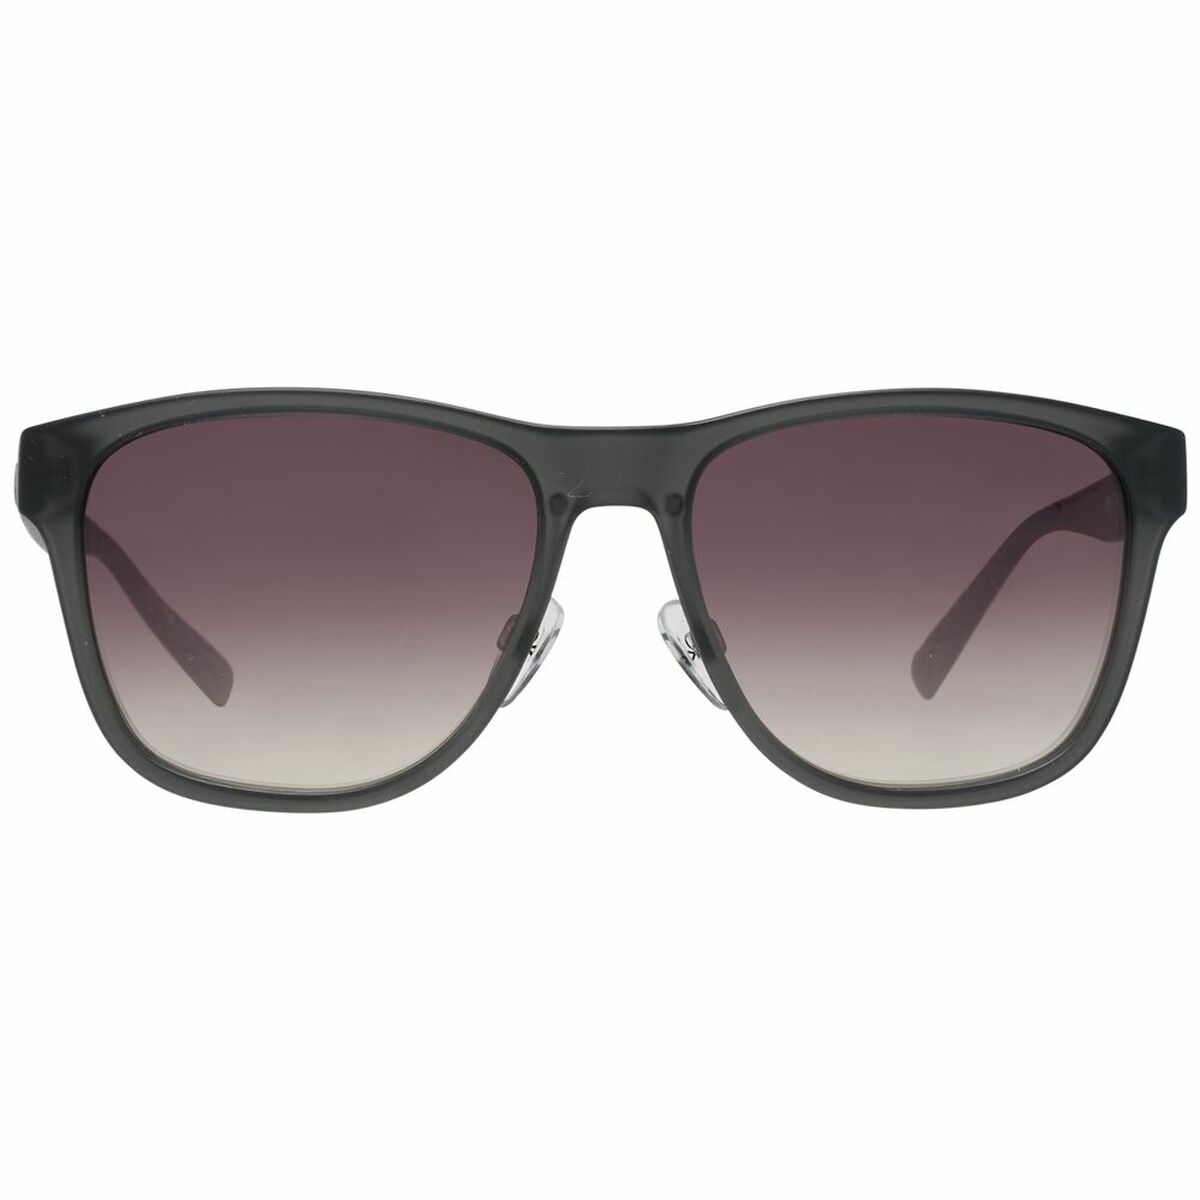 Men's Sunglasses Benetton BE5013 56921